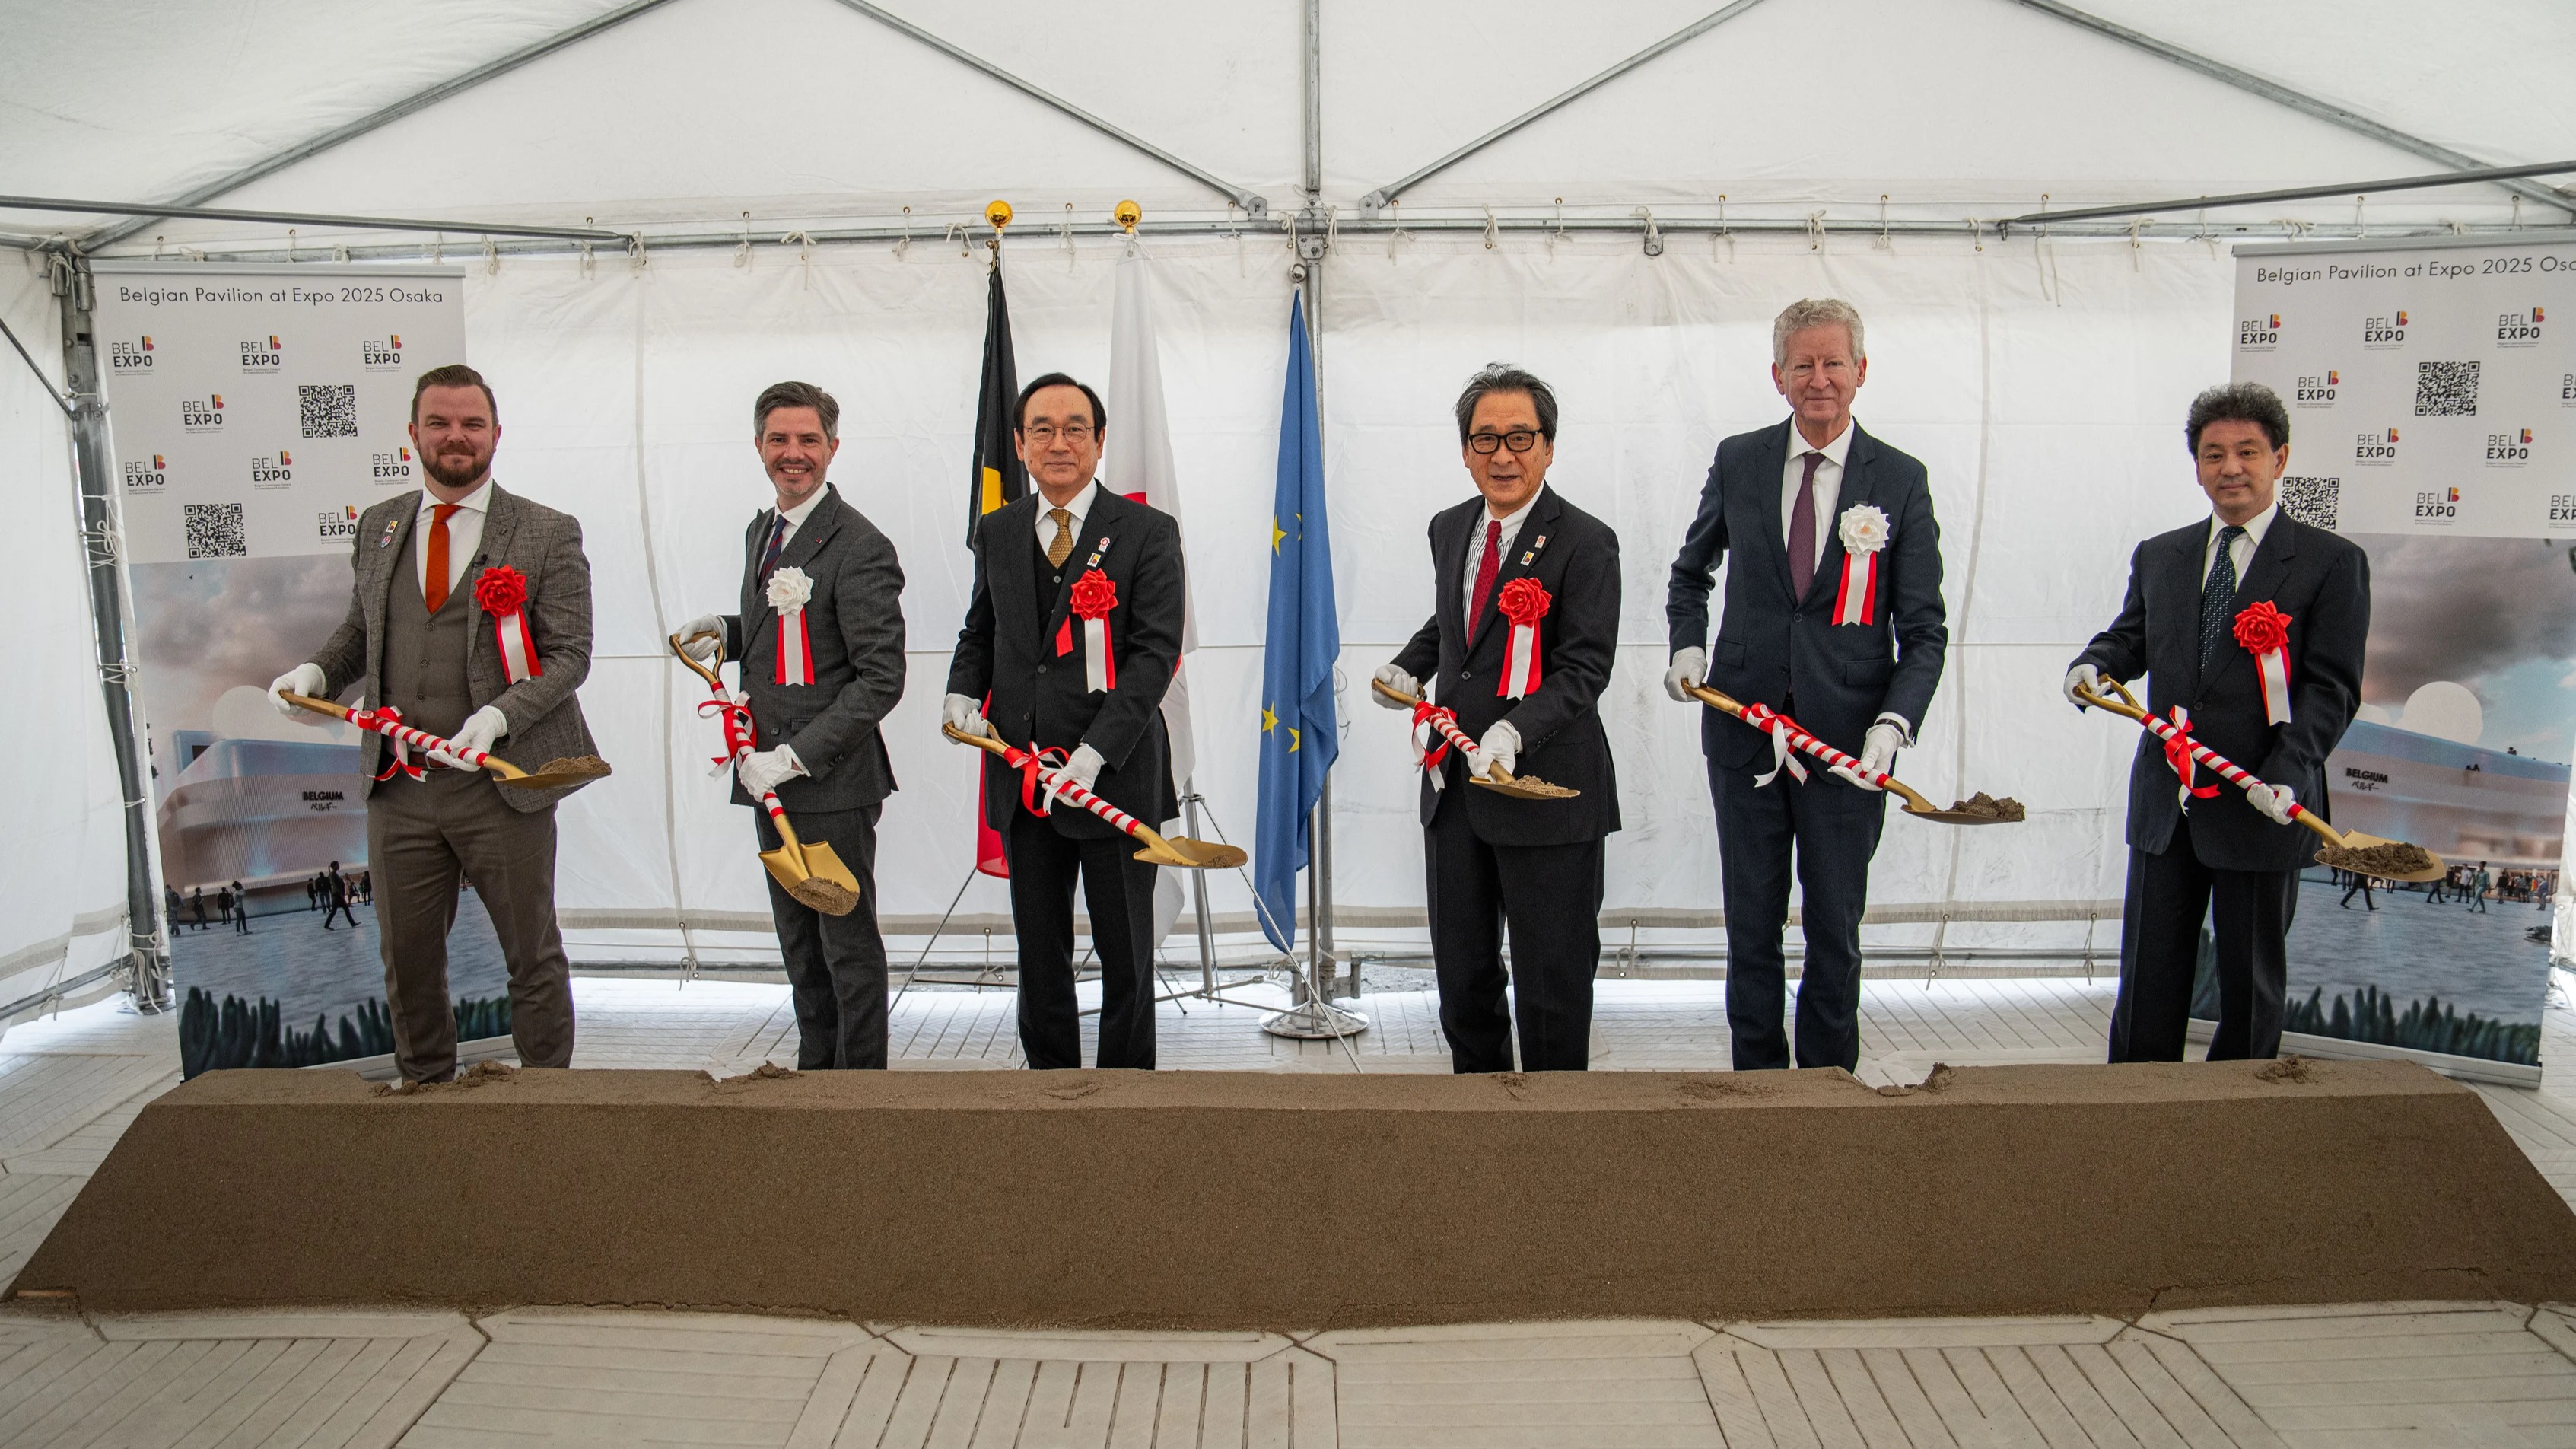 Pose de la première pierre pour la construction du pavillon belge à l'Expo 2025 Osaka